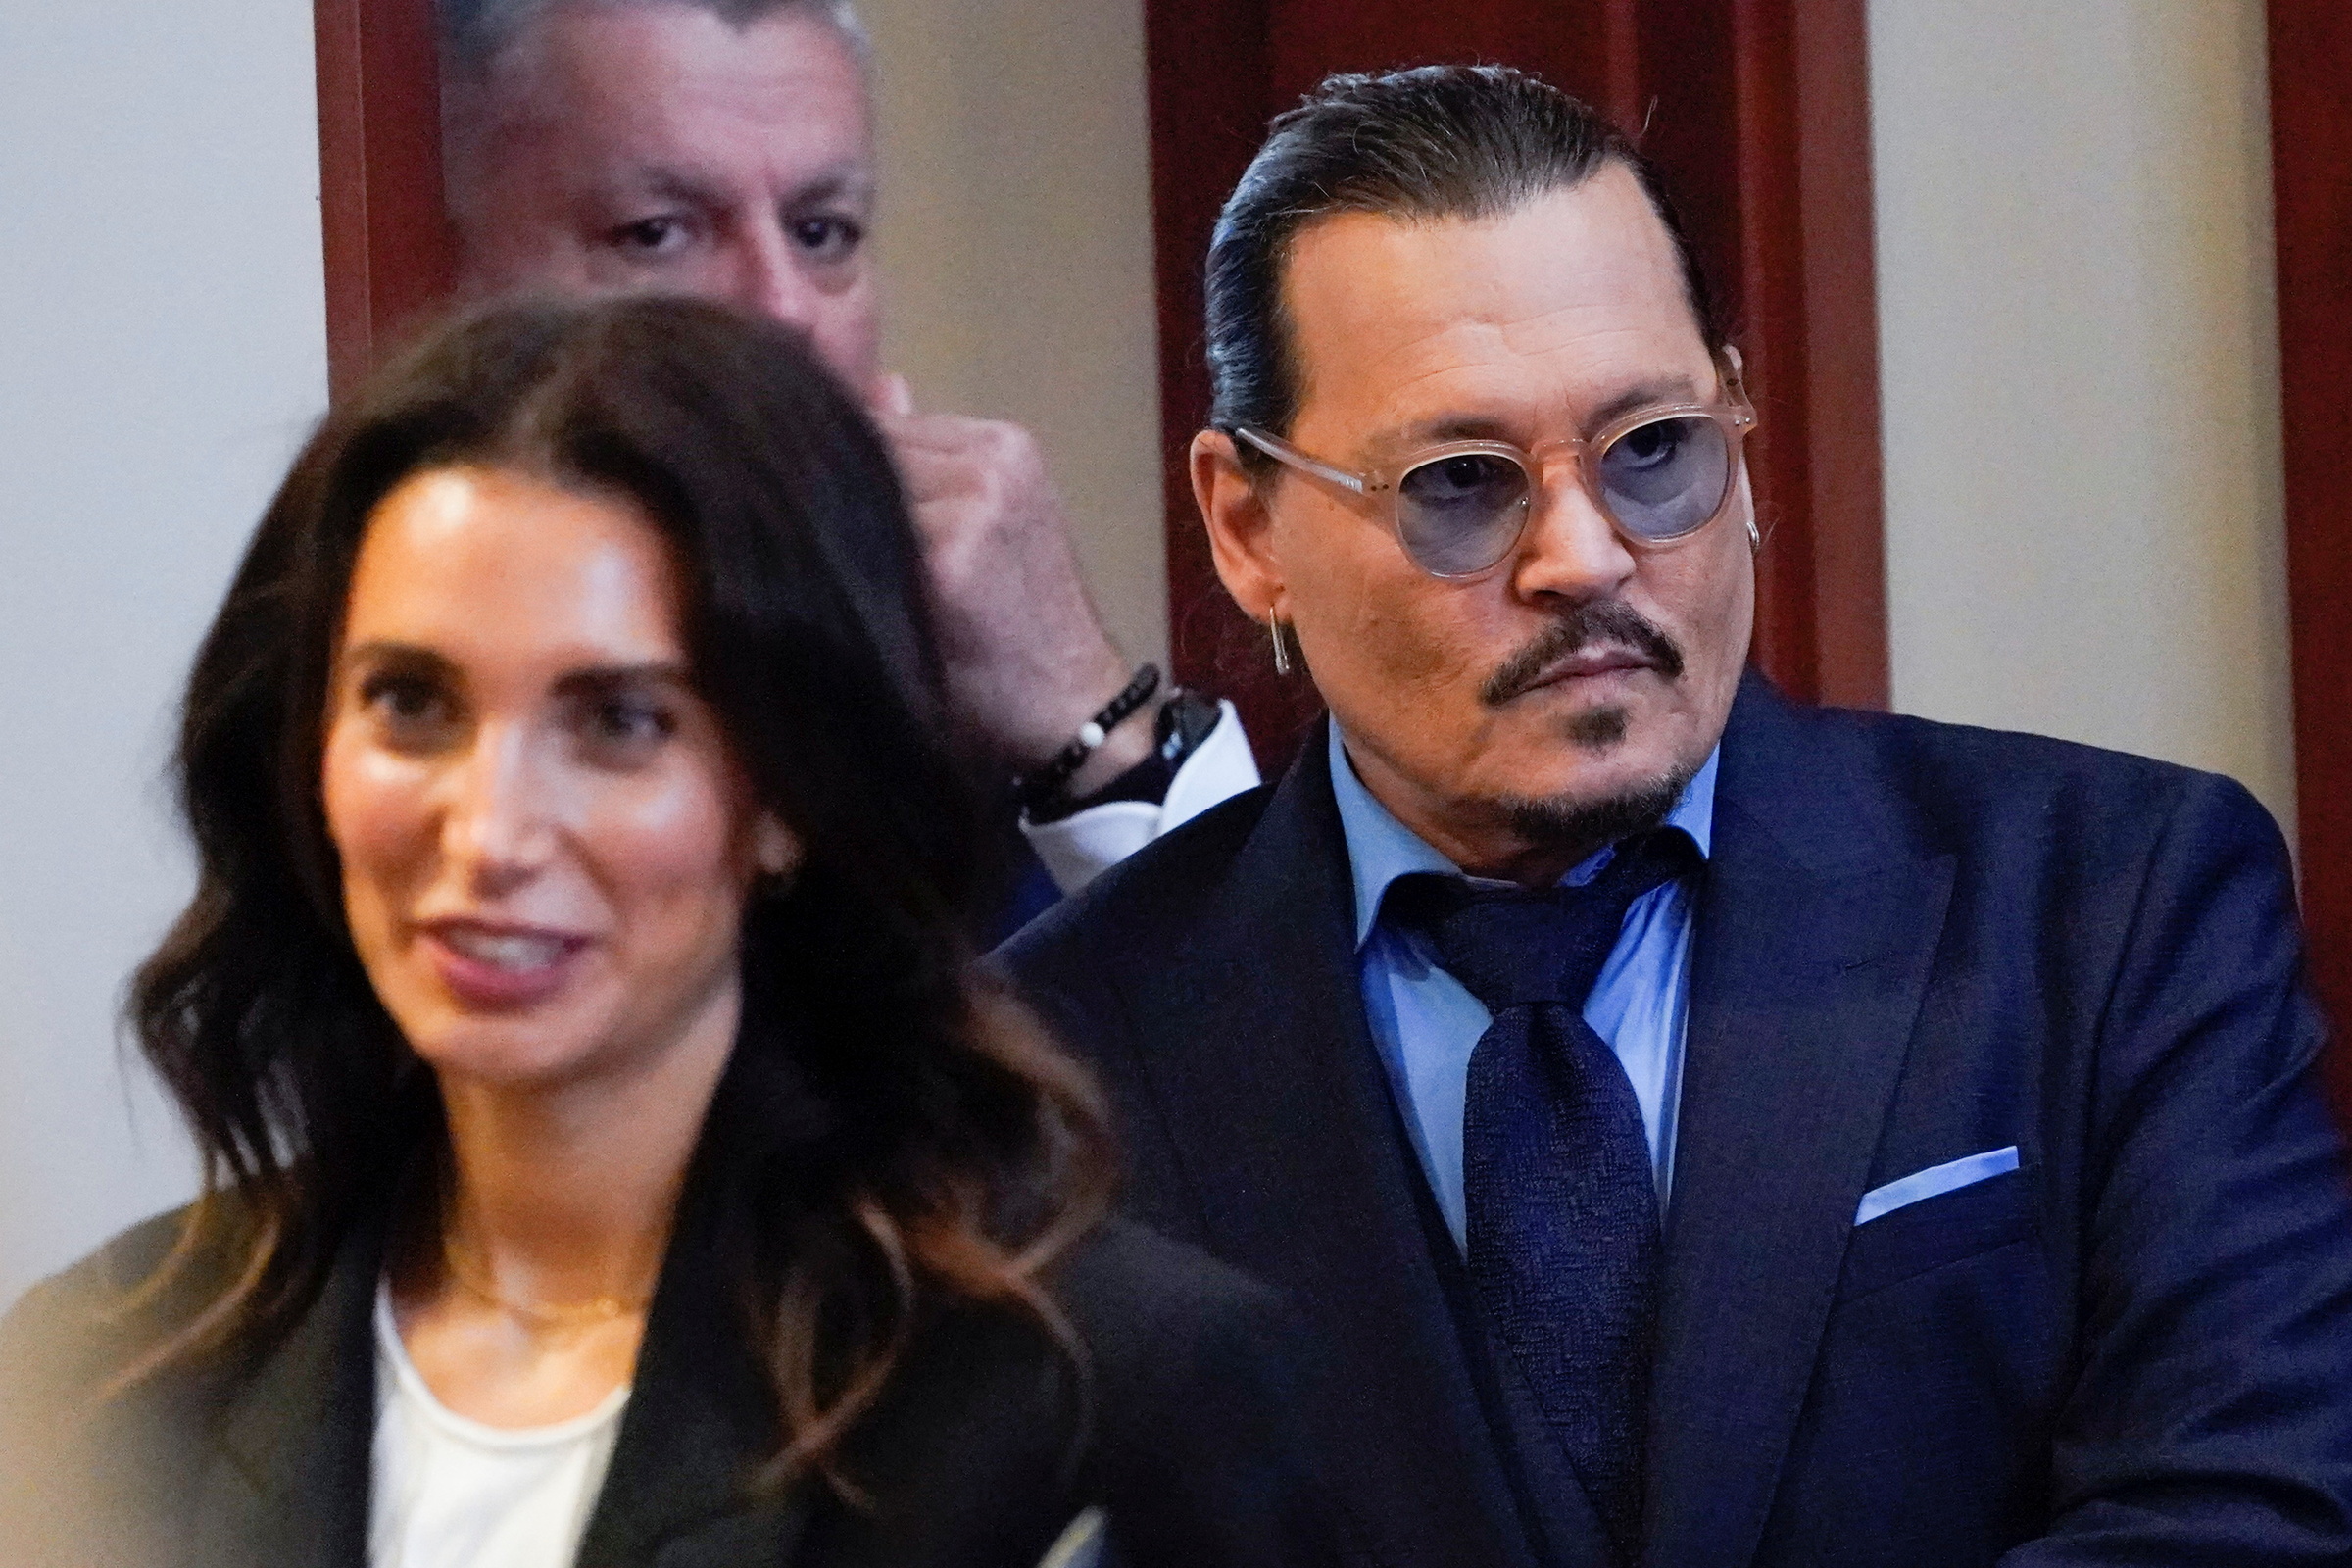 Johnny Depp (phải) cùng đội ngũ luật sư tại phiên tòa ở Fairfax. Ảnh: Reuters